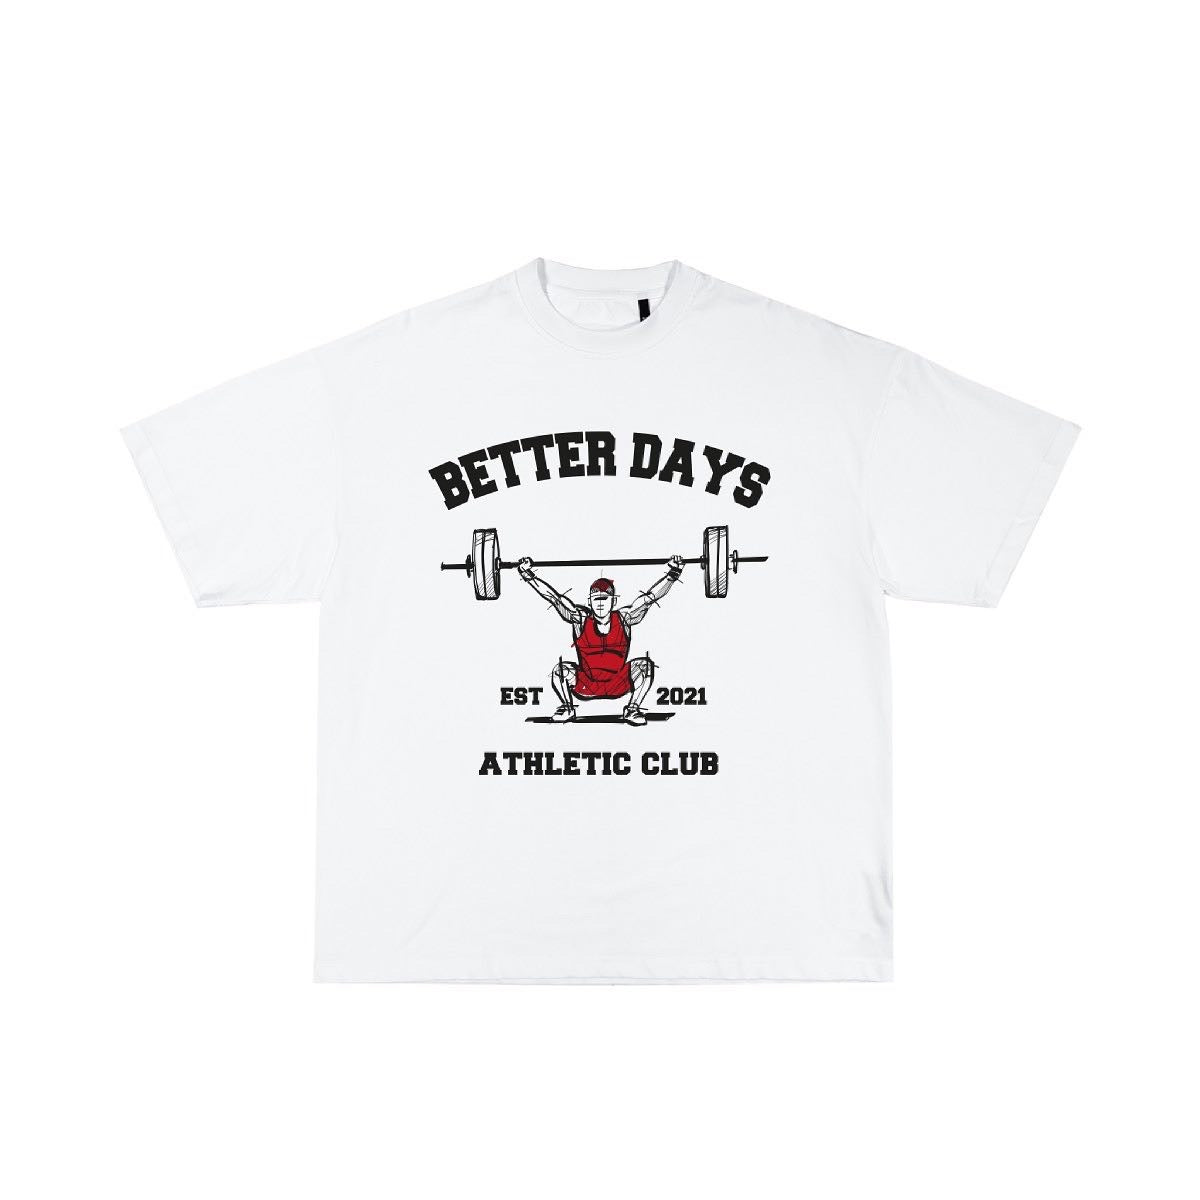 White Athletic club oversized T shirt